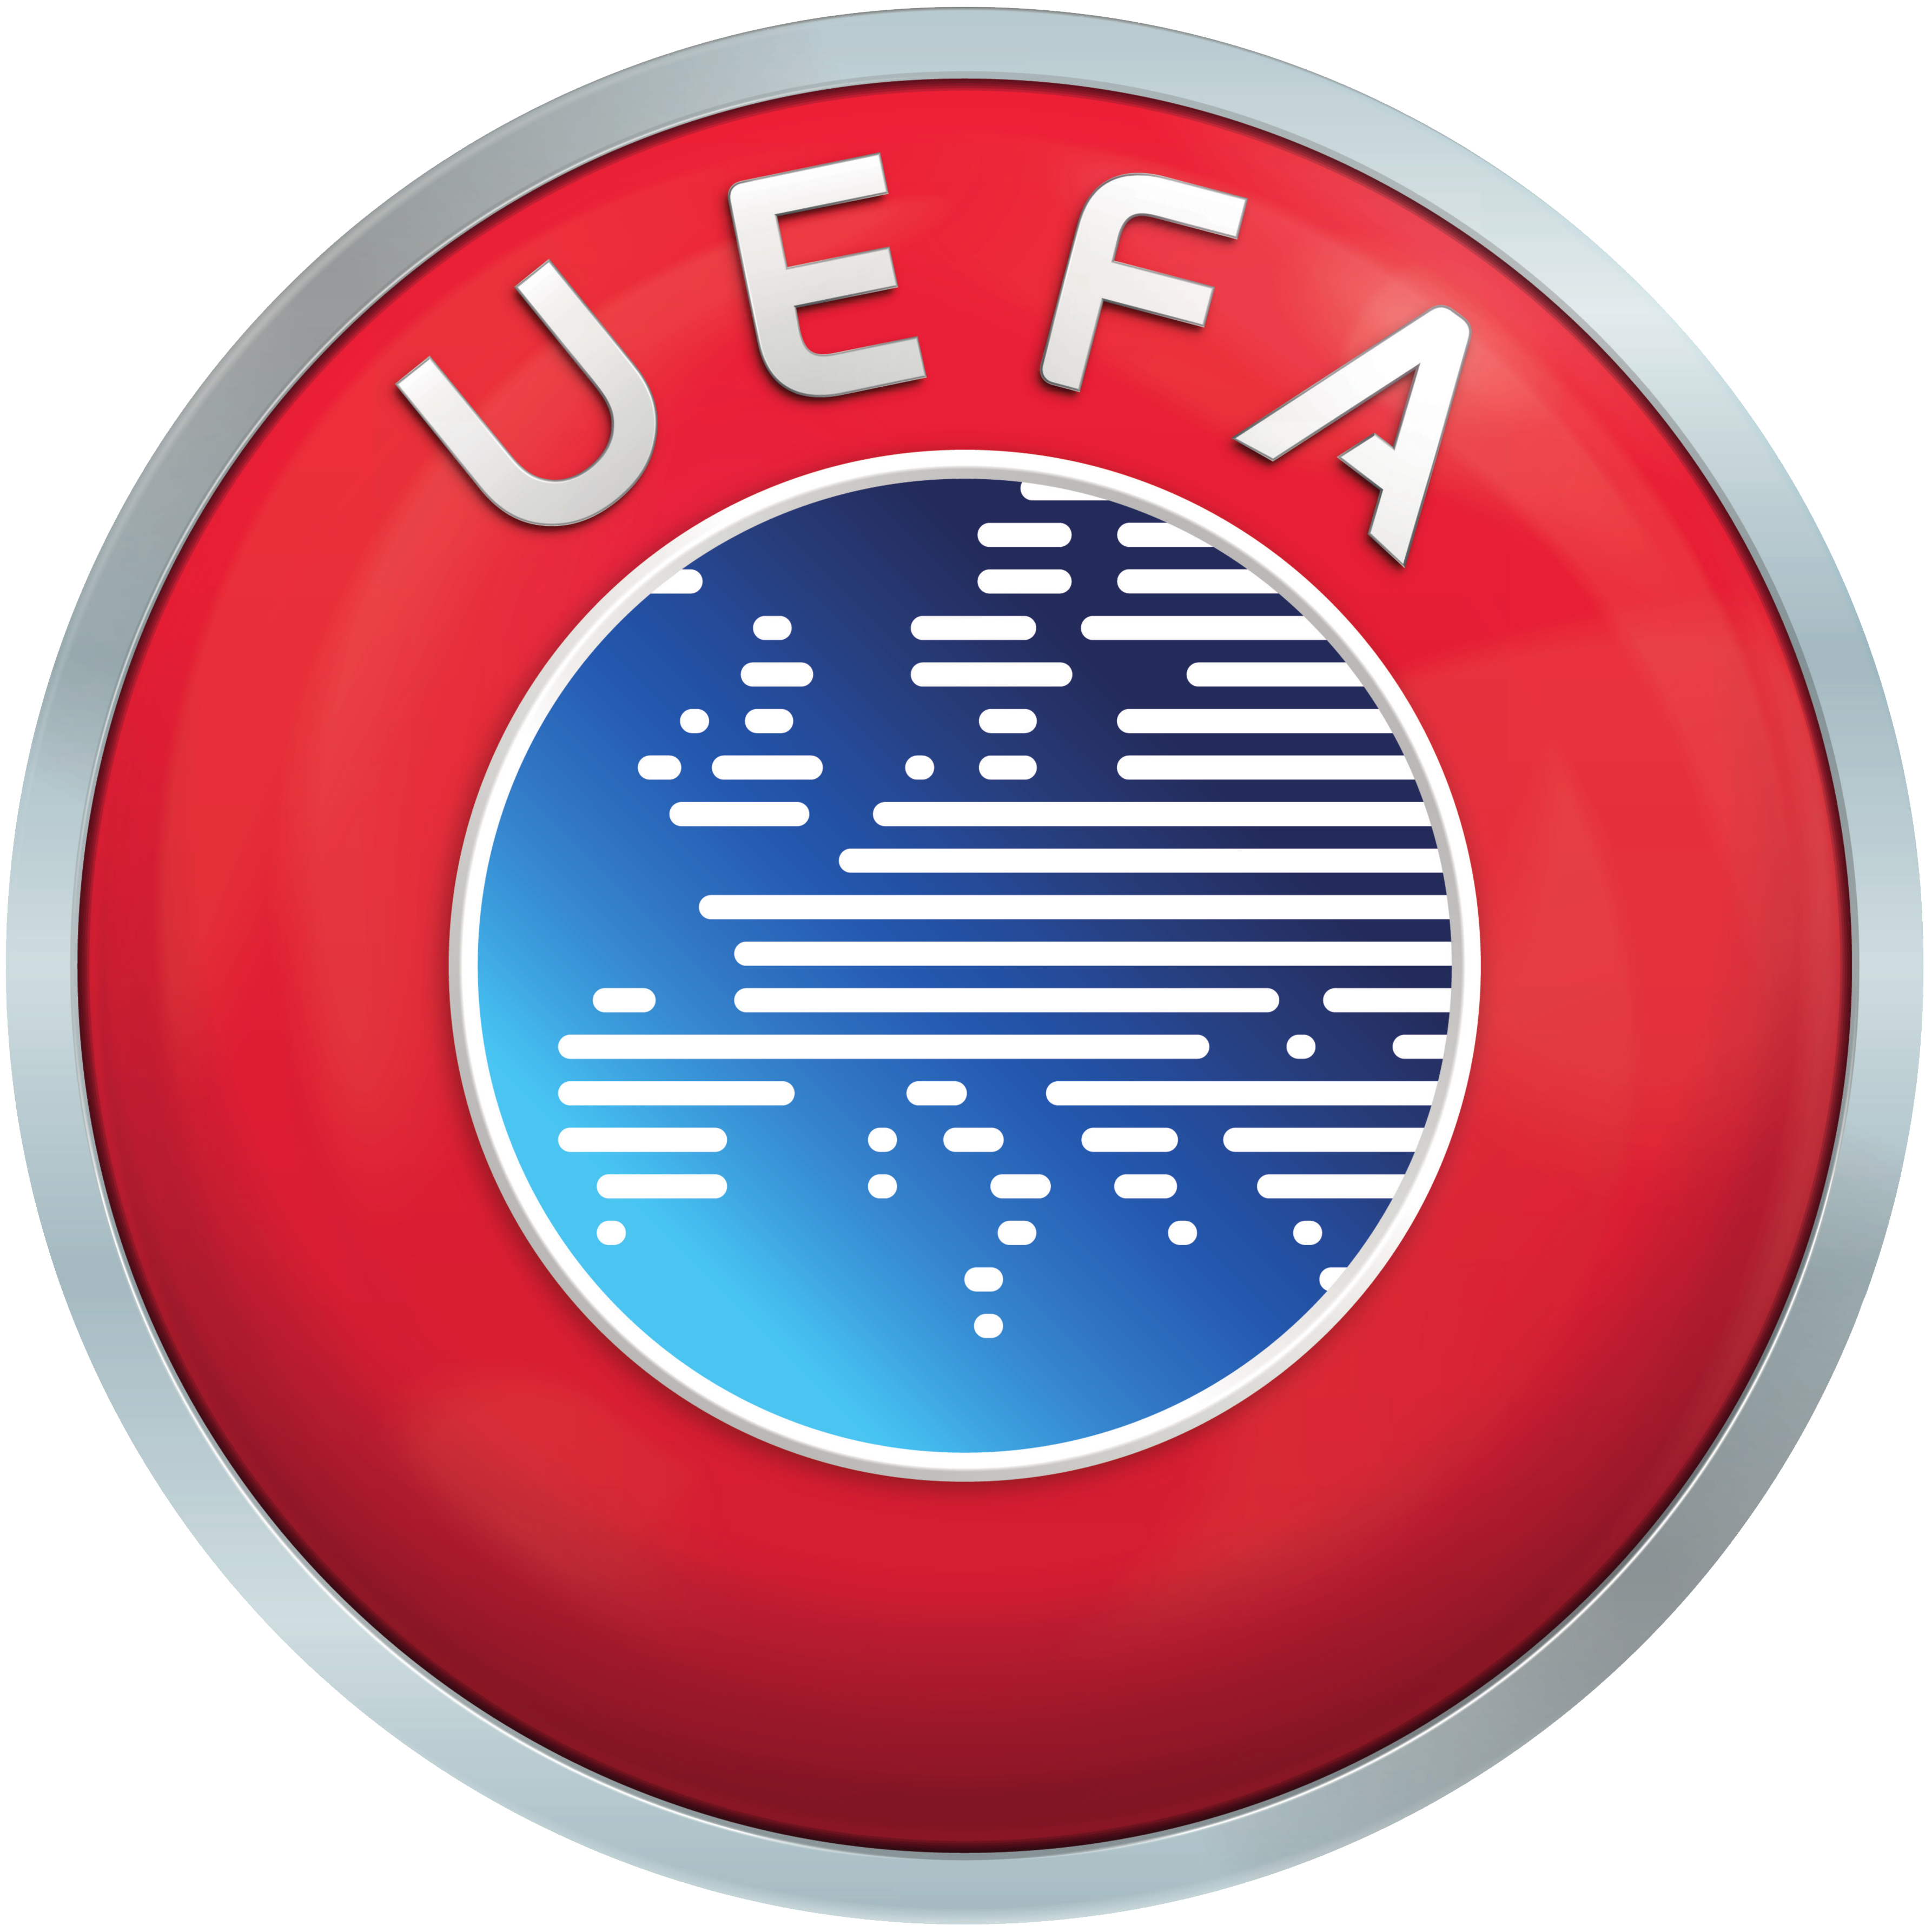 UEFA - logo